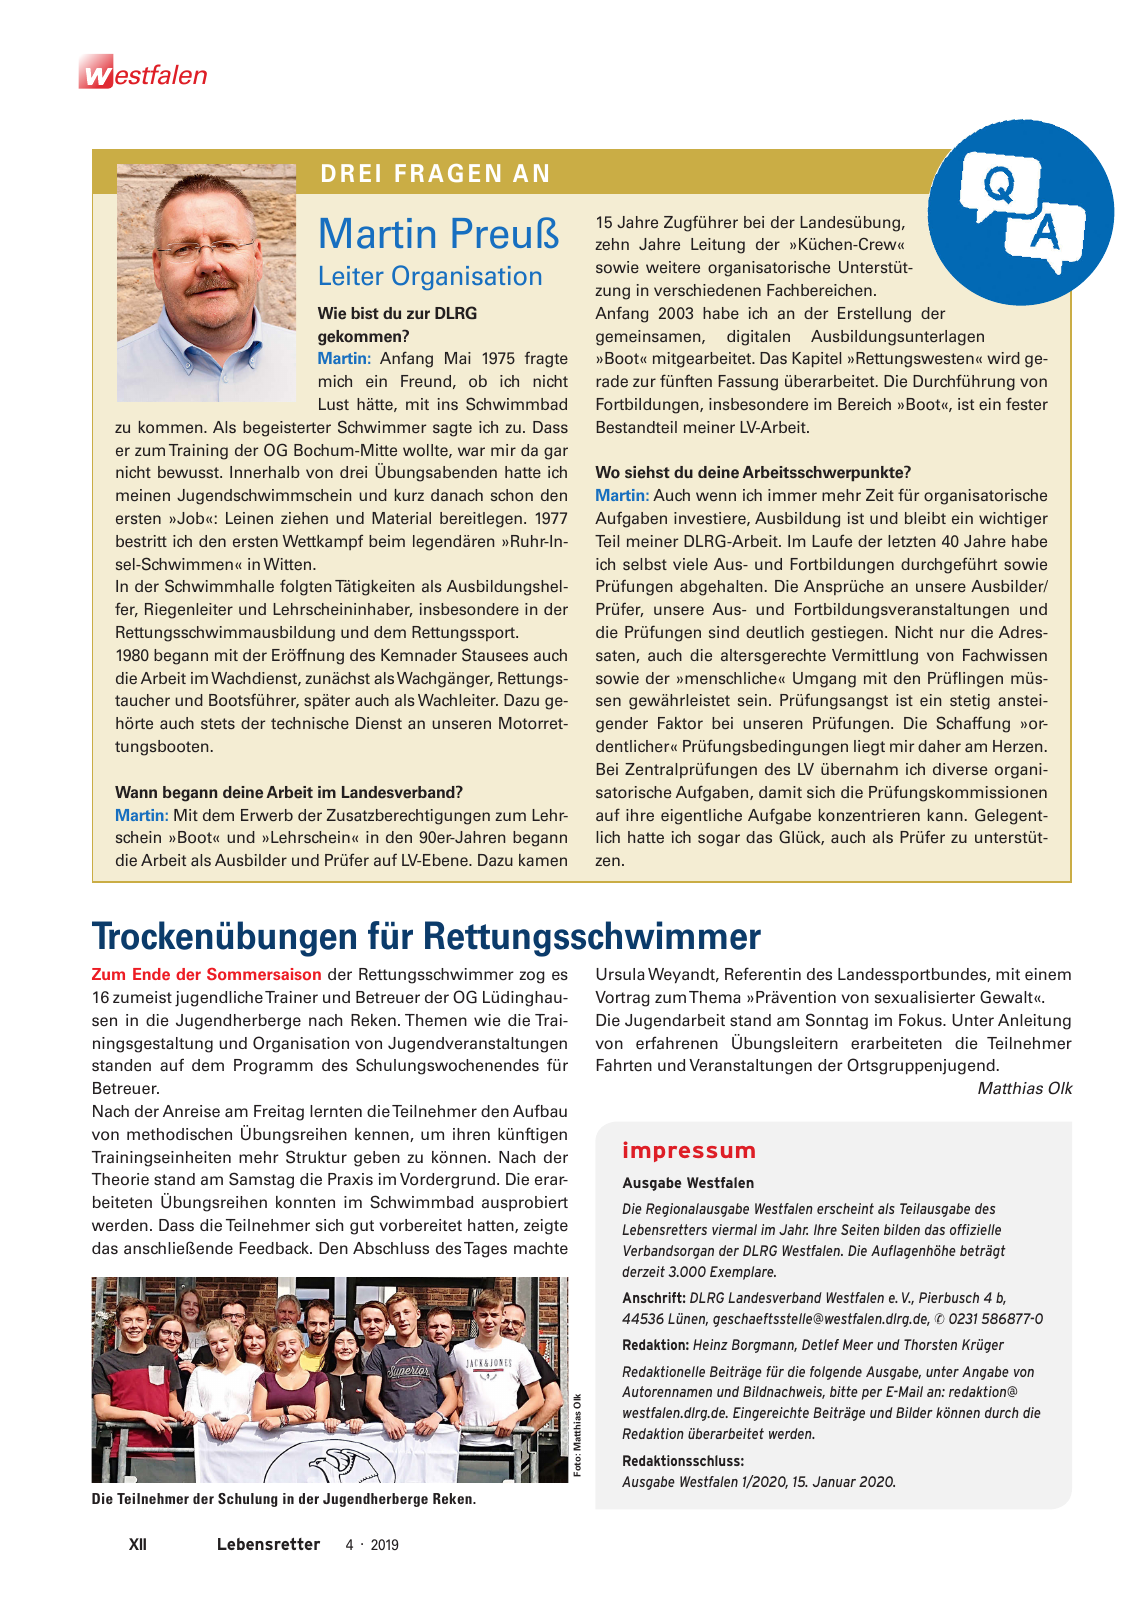 Vorschau Lebensretter 4/2019 -  Westfalen Regionalausgabe Seite 14